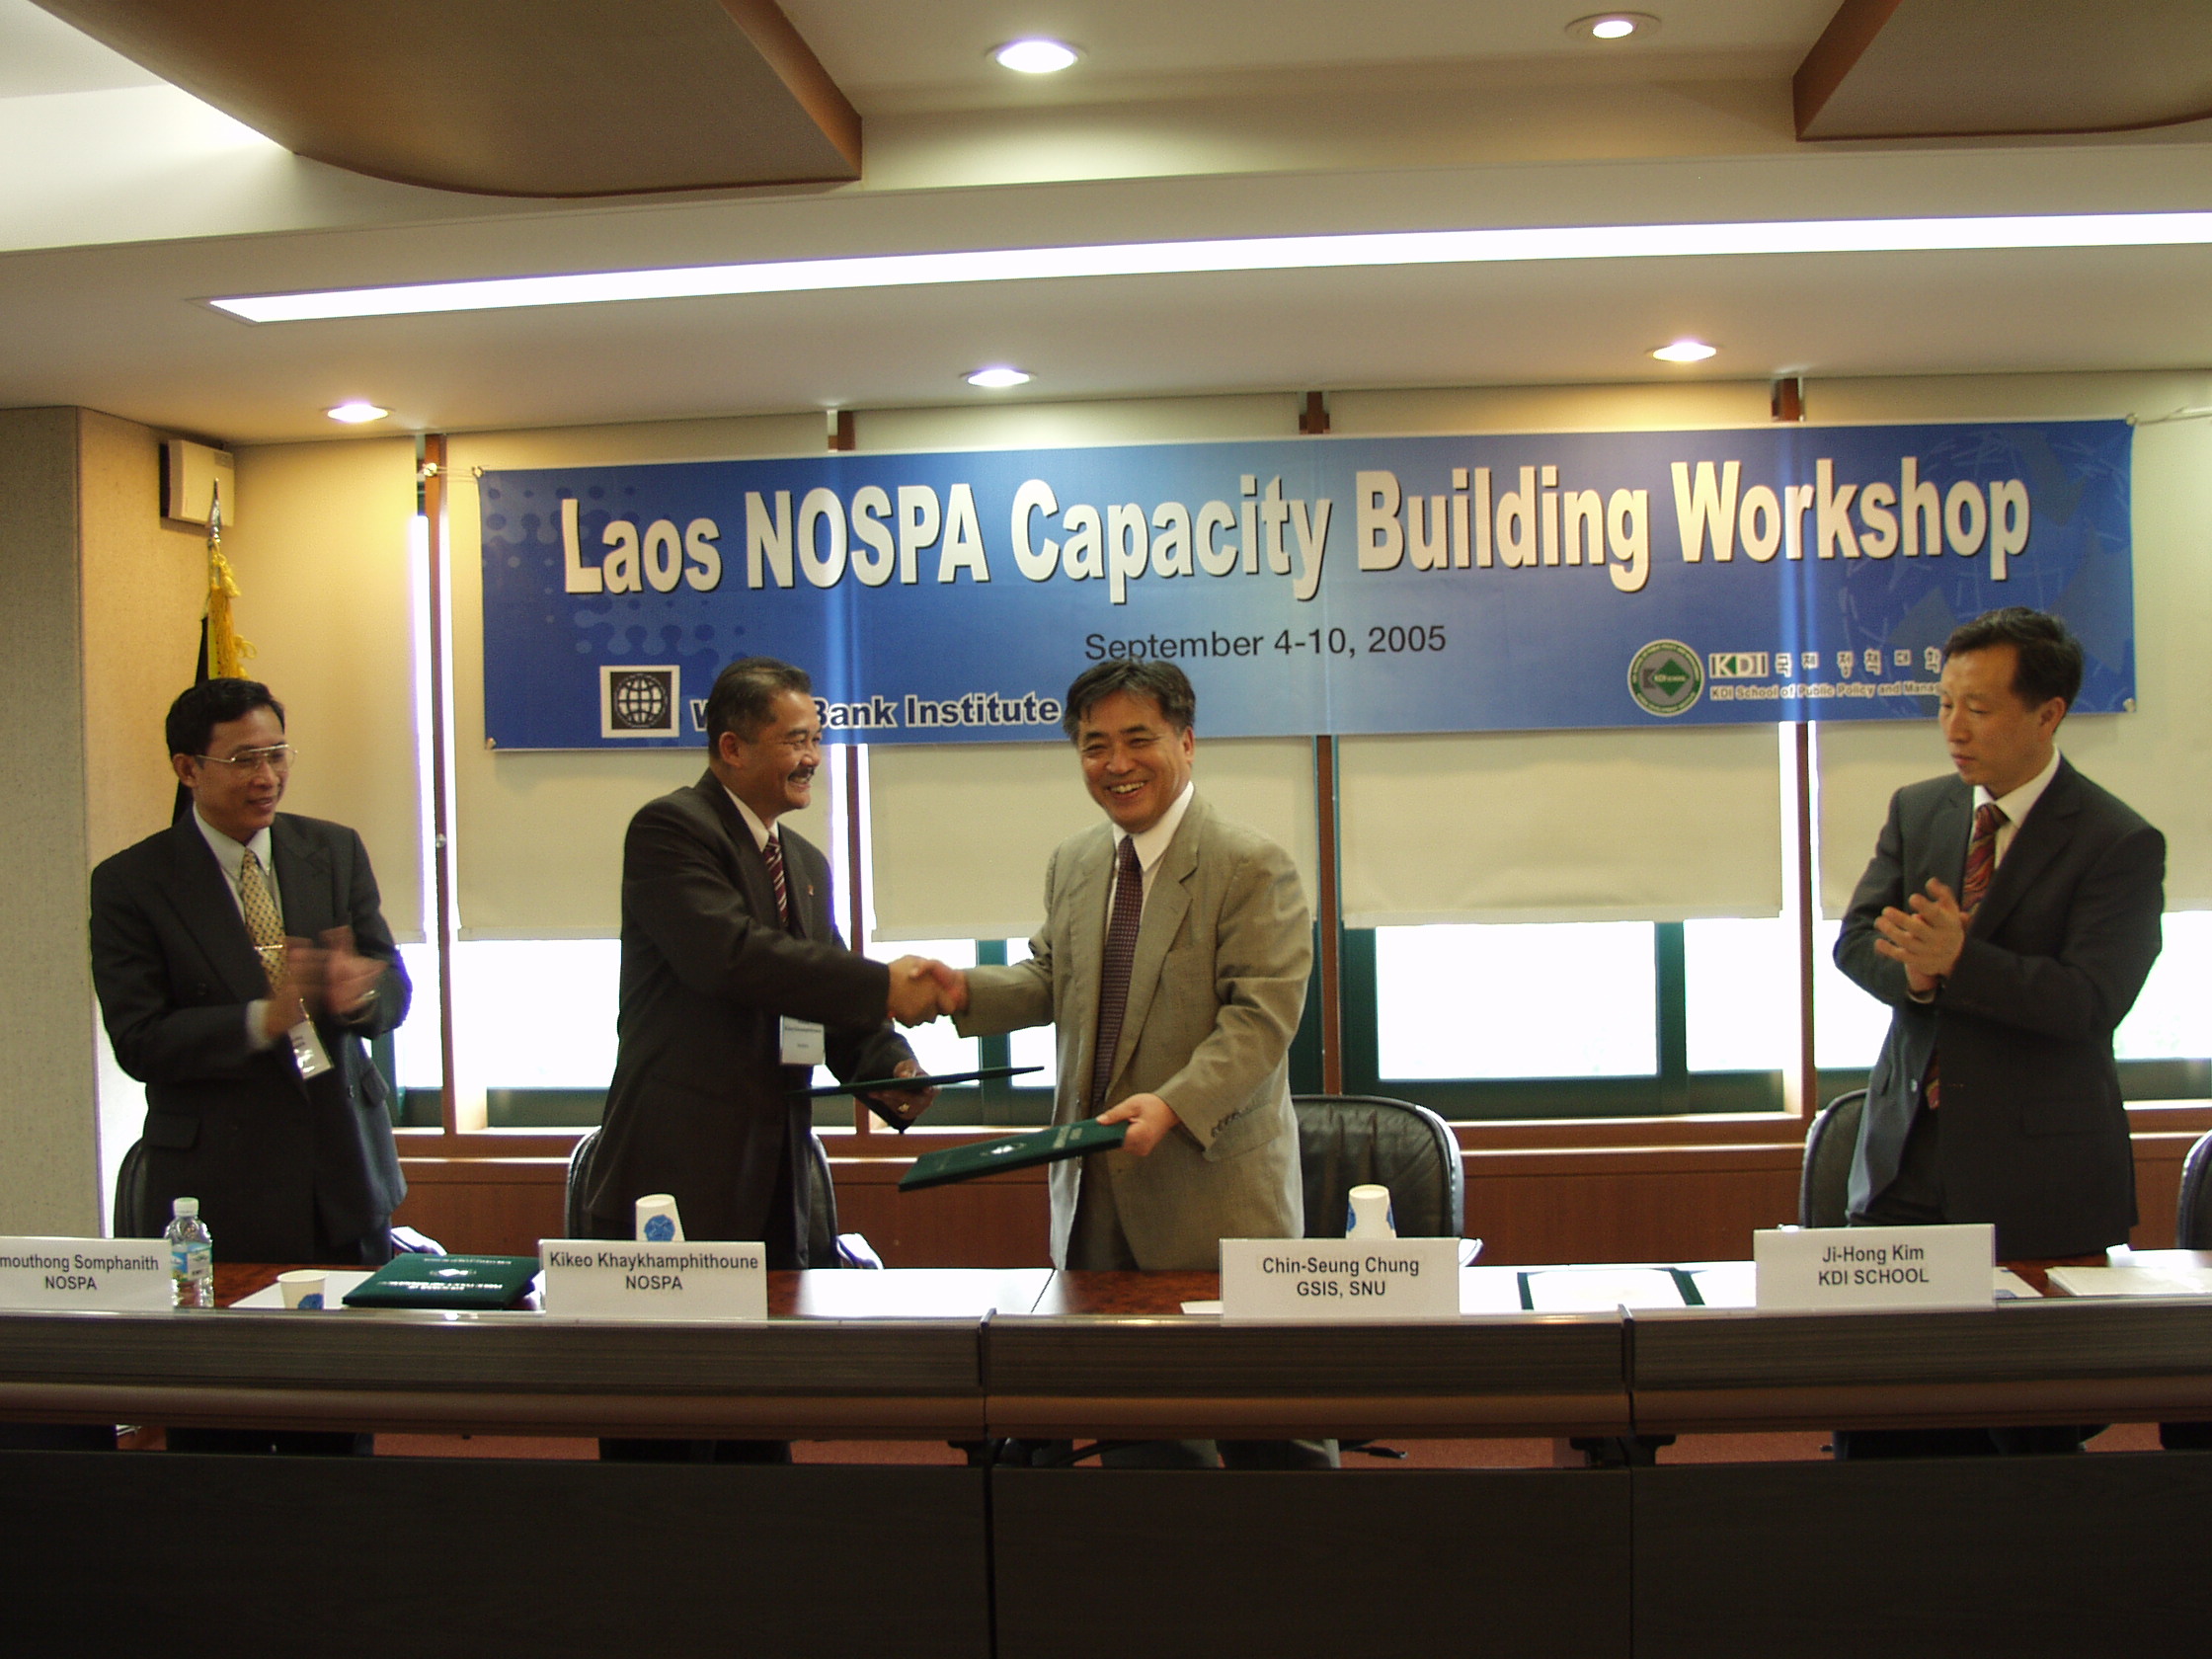 Laos NOSPA Capacity Building Workshop & MOU